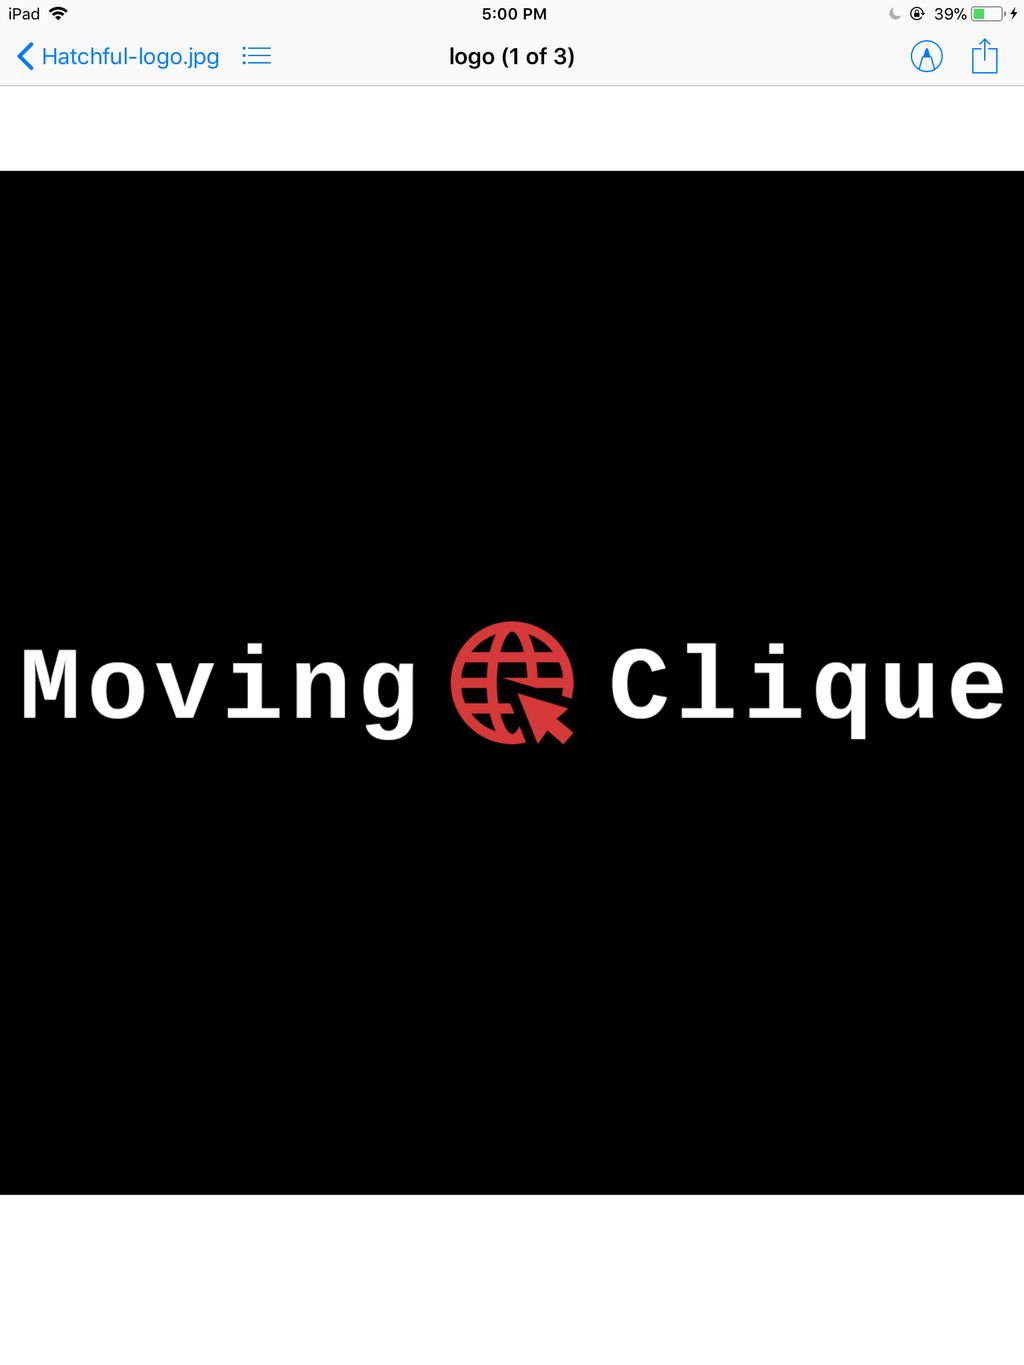 Moving Clique LLC